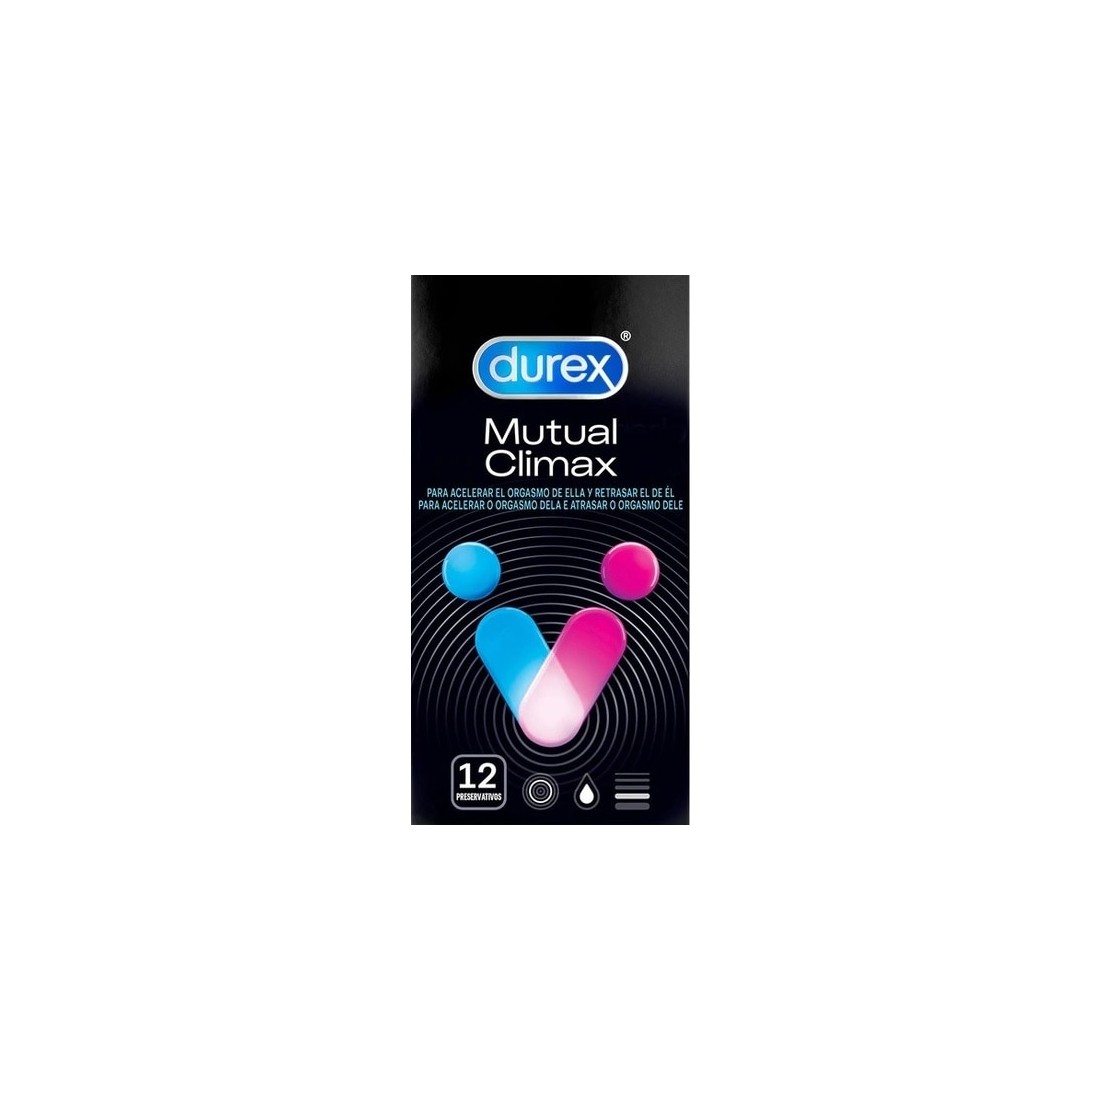 Preservativos Durex Mutual Climax - 12 Unidades - PR2010308215